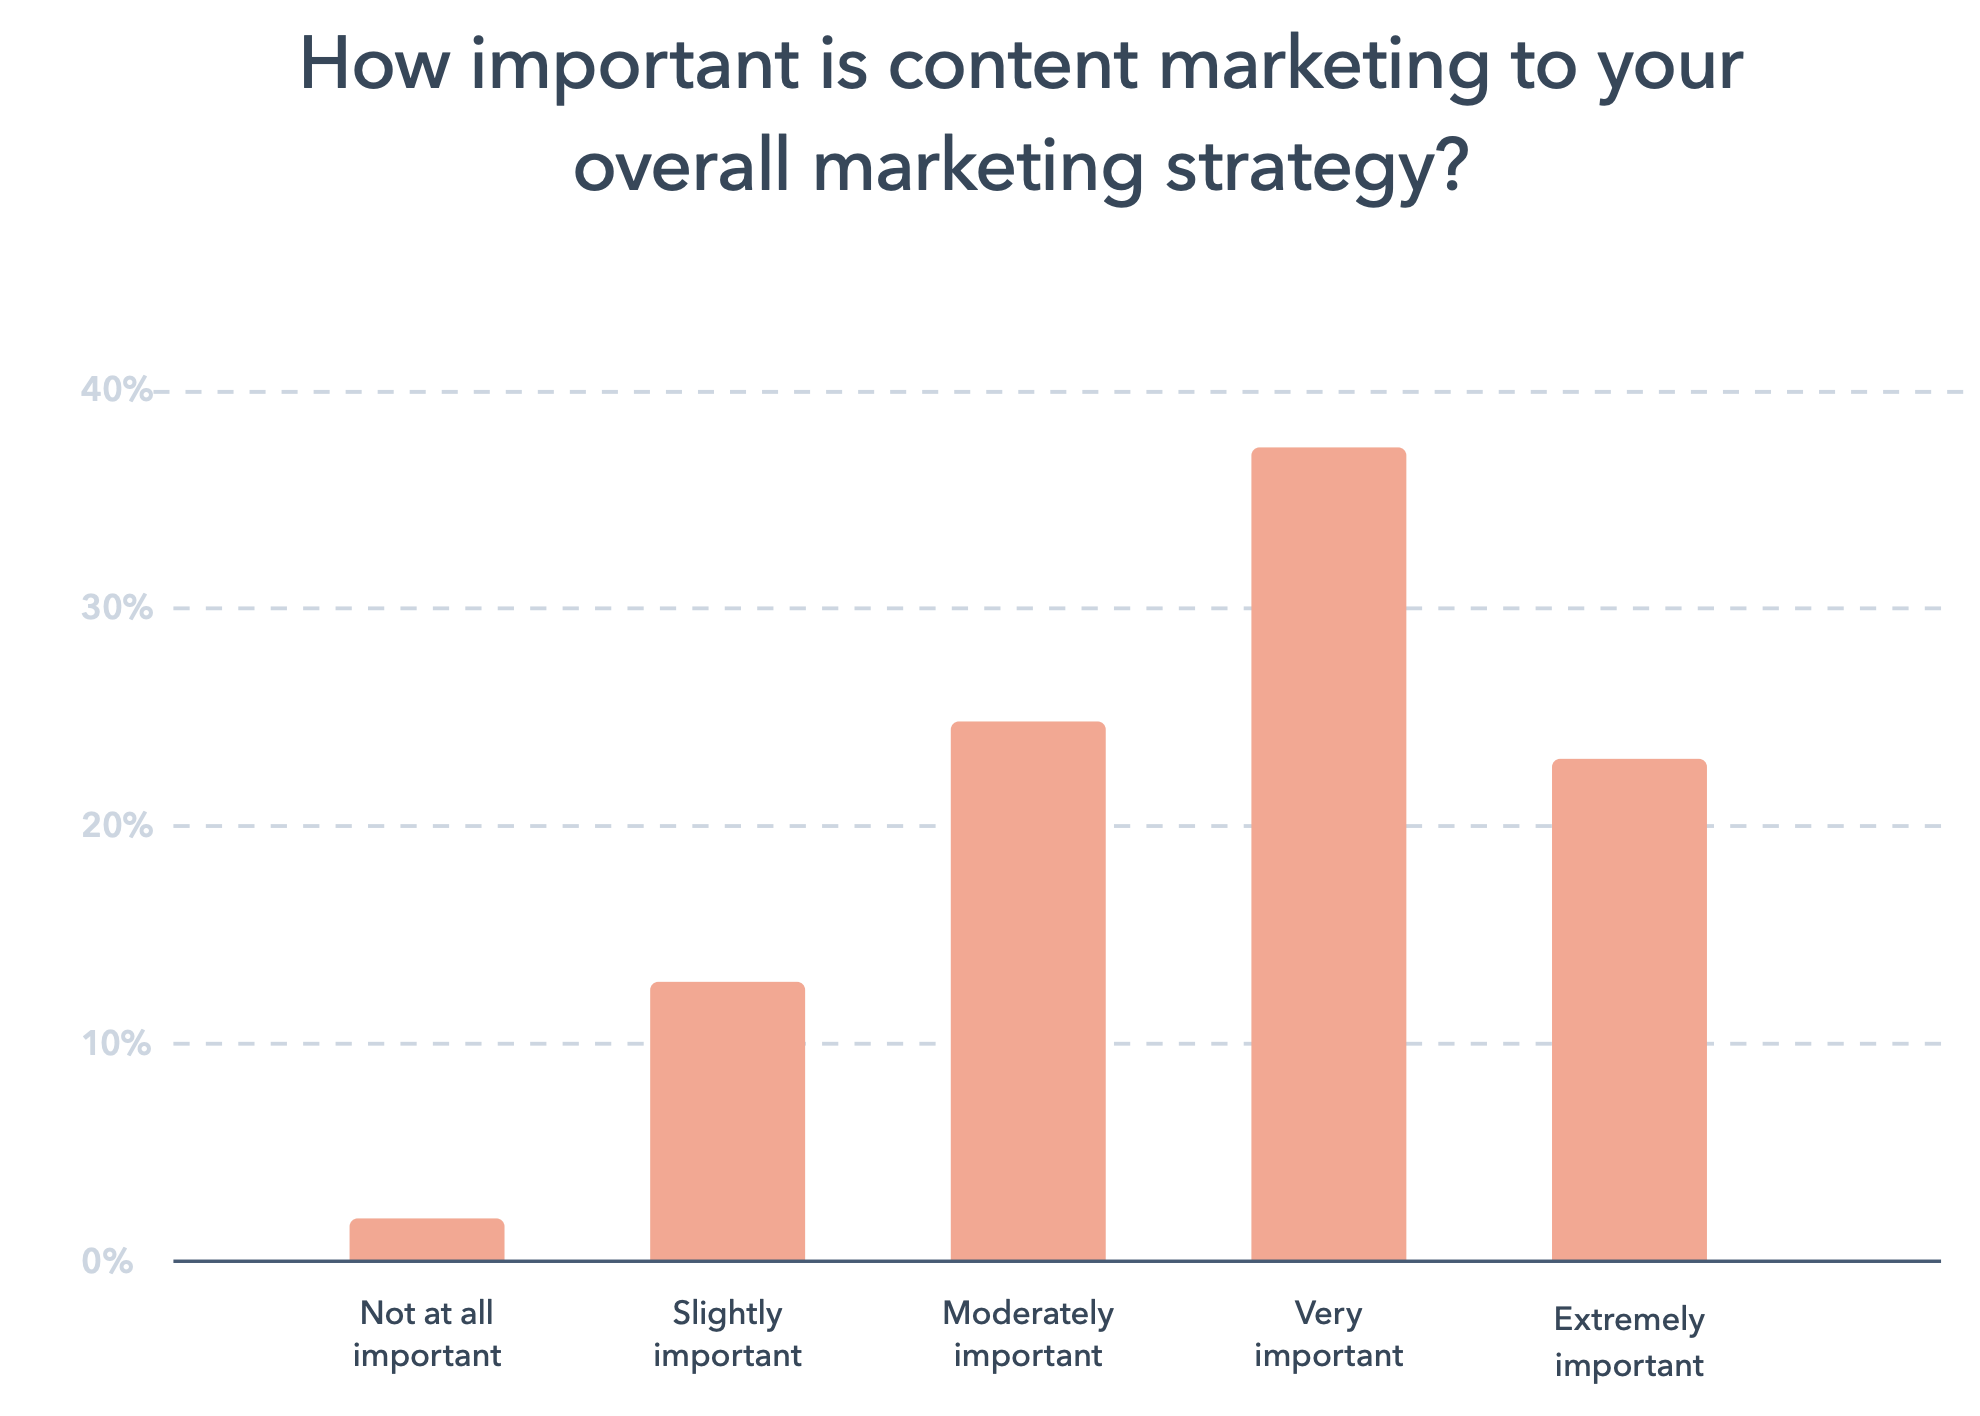 jak ważny jest content marketing dla strategii w Twojej firmie - Marketingowe trendy 2023